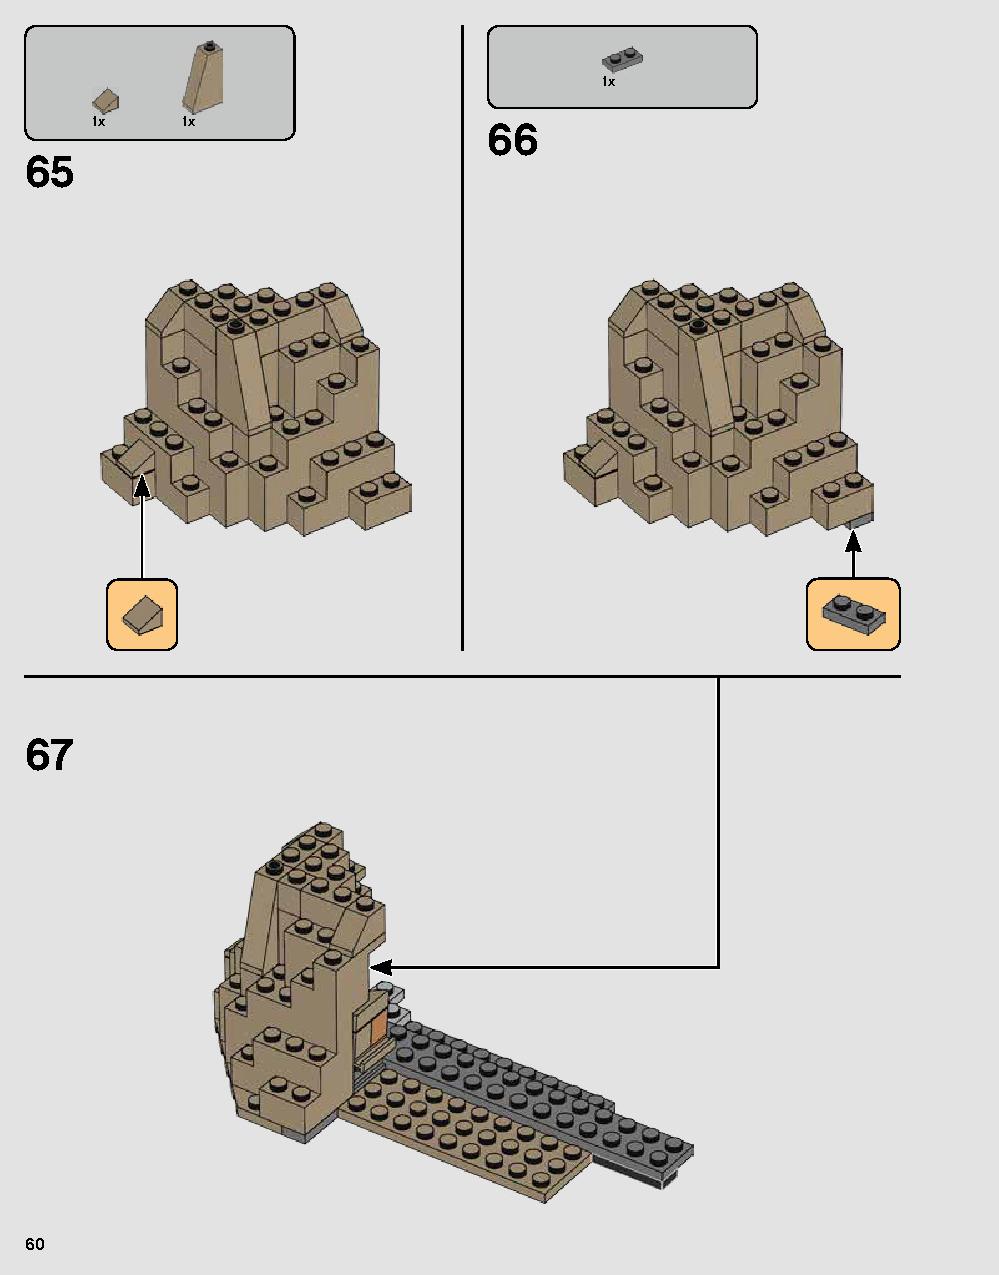 ダース・ベイダーの城 75251 レゴの商品情報 レゴの説明書・組立方法 60 page